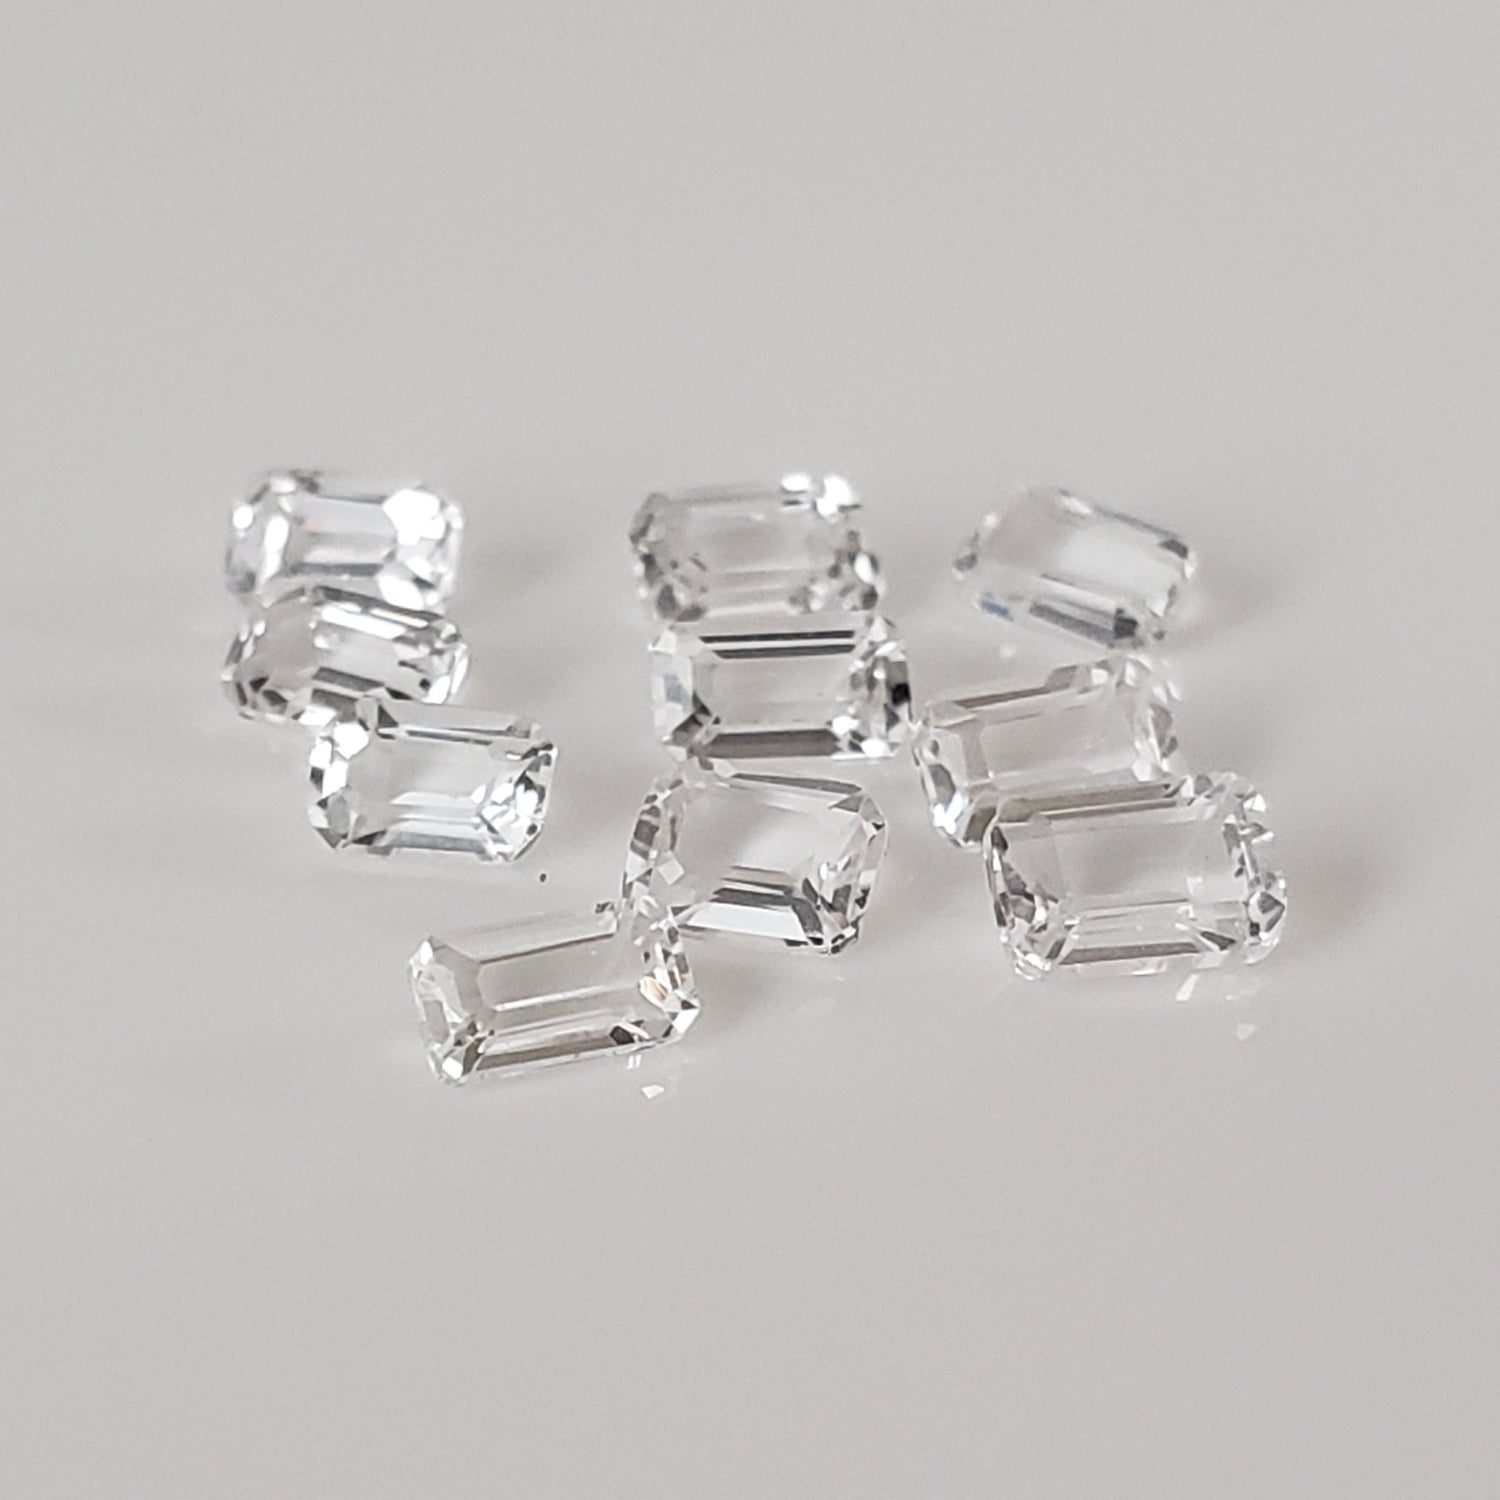 Topaz | 11 Piece Gemstone Lot | Octagon Cut | White | 3.42tcw